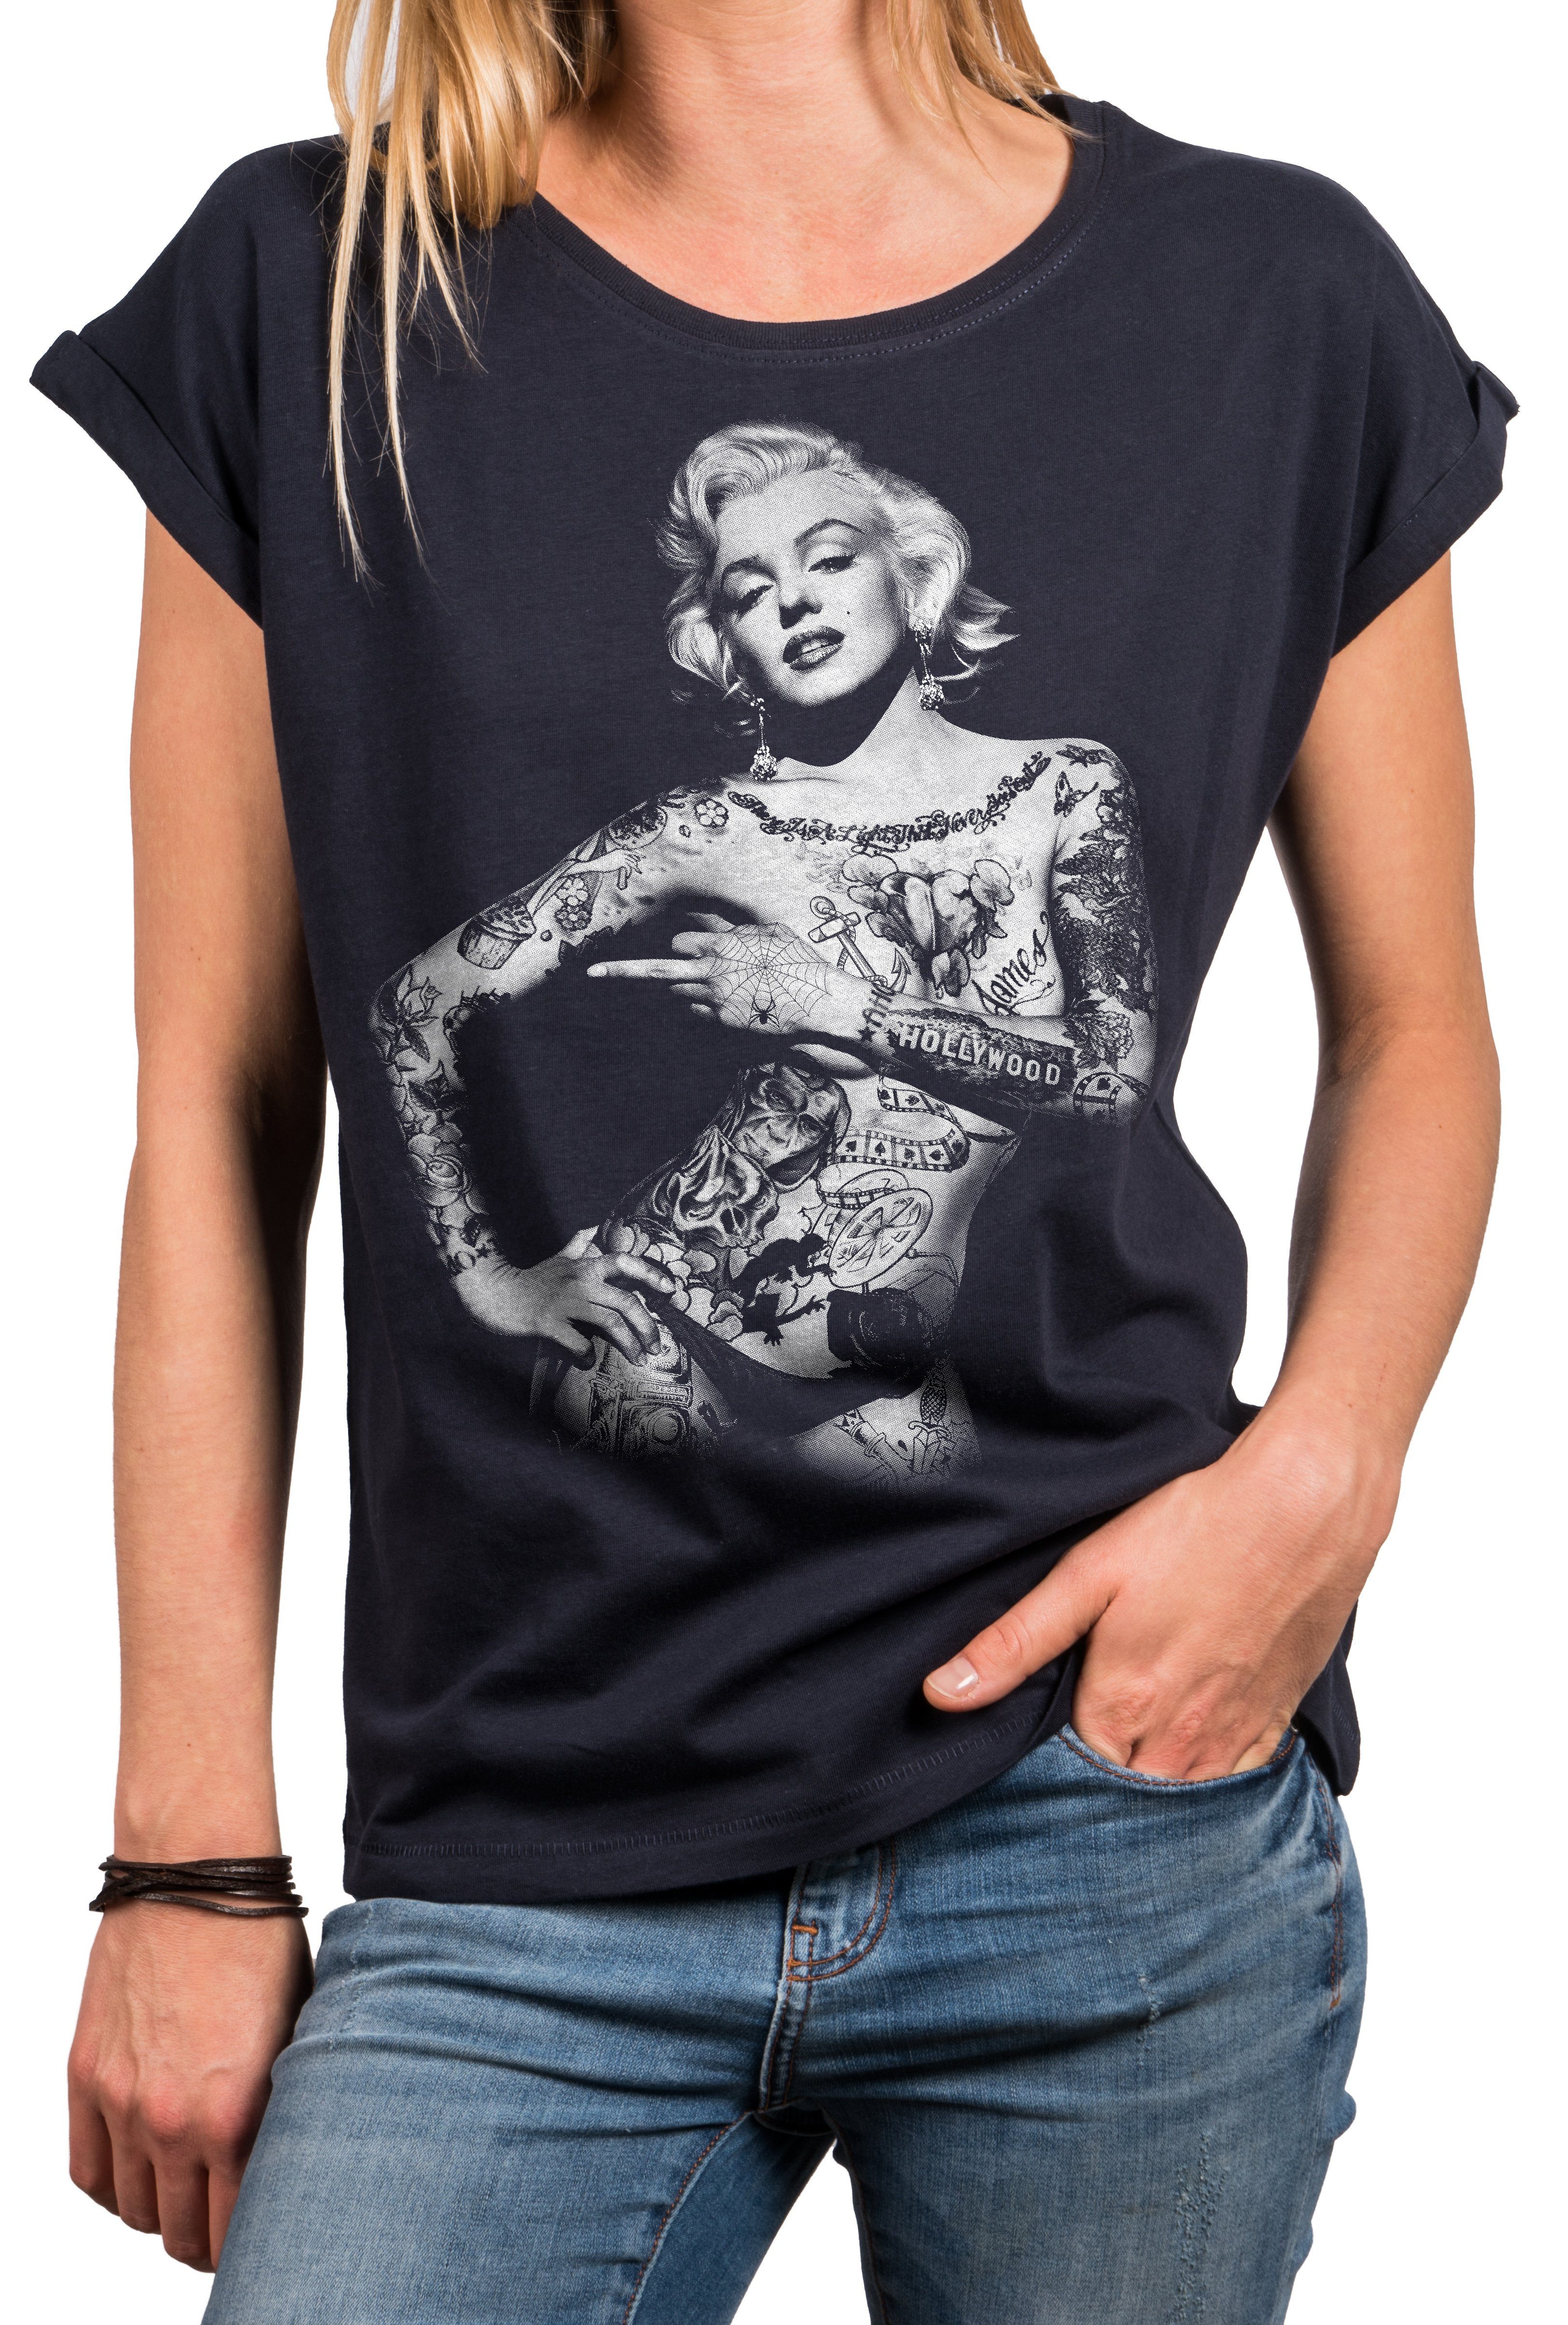 MAKAYA Print-Shirt Damen Lässig Sommer Top Aufdruck Tattoo Vintage Rock Motiv Cool Frech (Kurzarm Rundhals, Schwarz, Grau, Blau) Baumwolle, große Größen